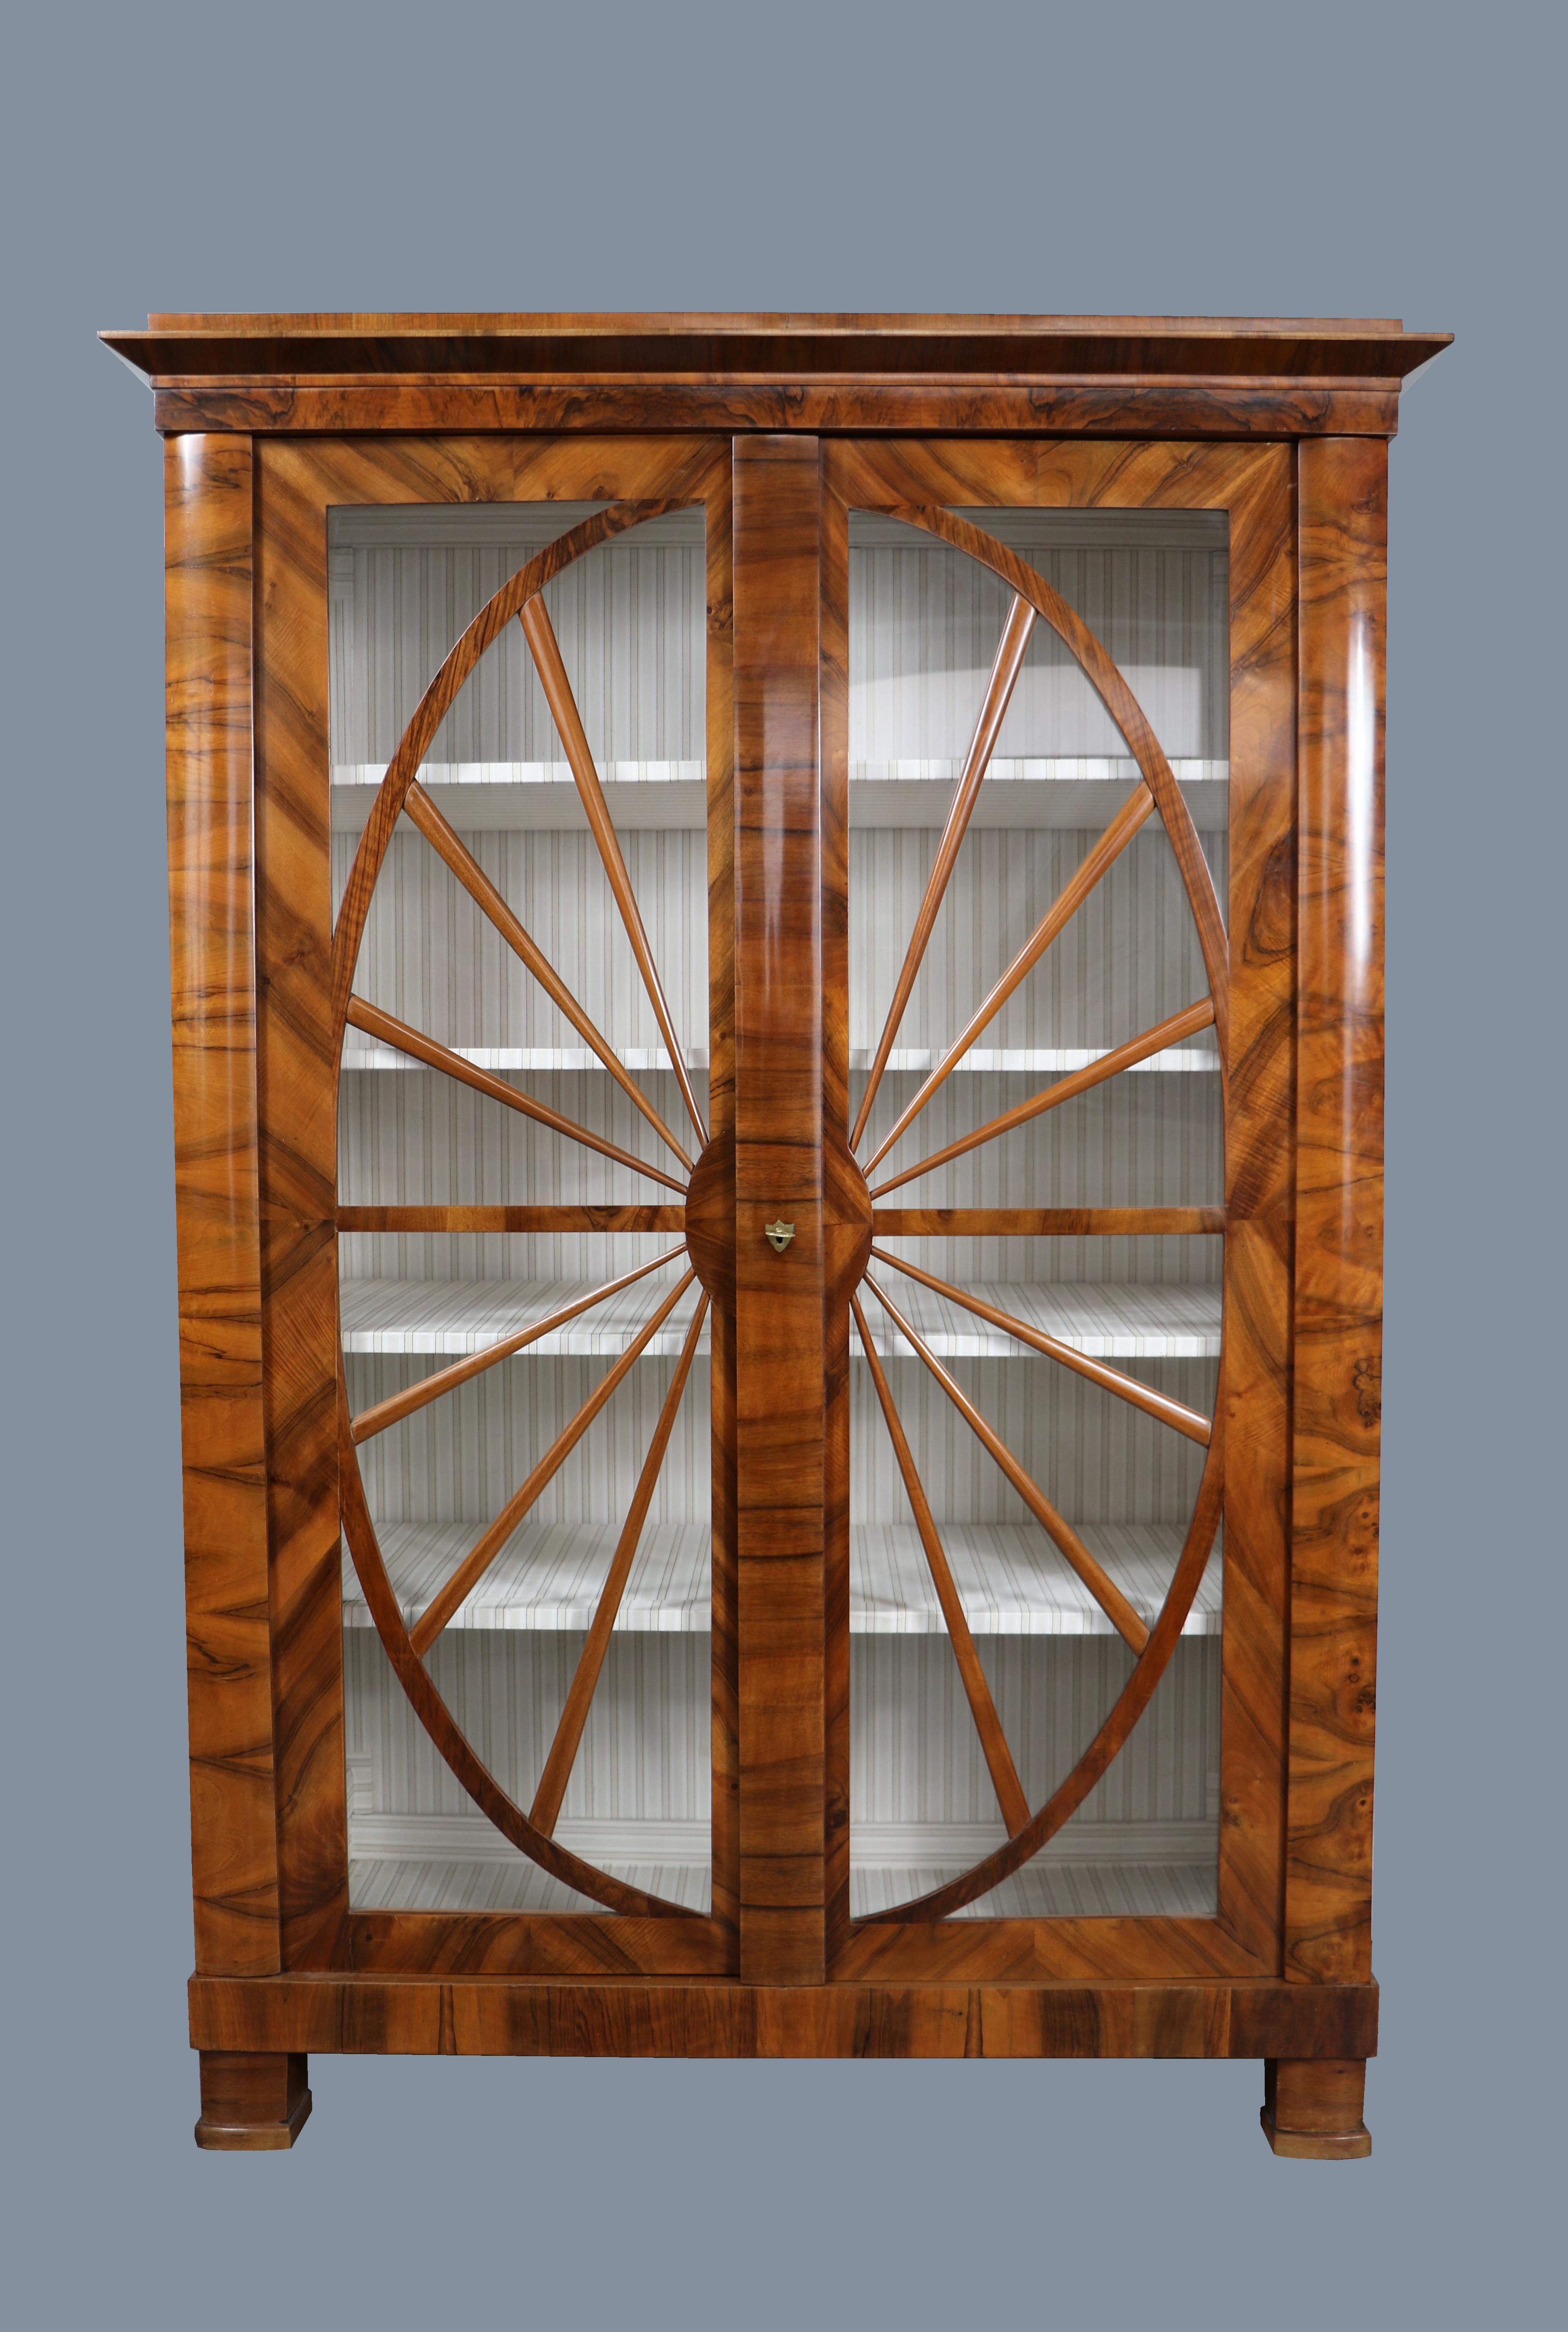 Bonjour,
Nous aimerions vous offrir cette vitrine en noyer Biedermeier de la première heure, vraiment exquise. La pièce a été fabriquée à Vienne vers 1825.

Le Biedermeier viennois se distingue par ses proportions sophistiquées, son design rare et